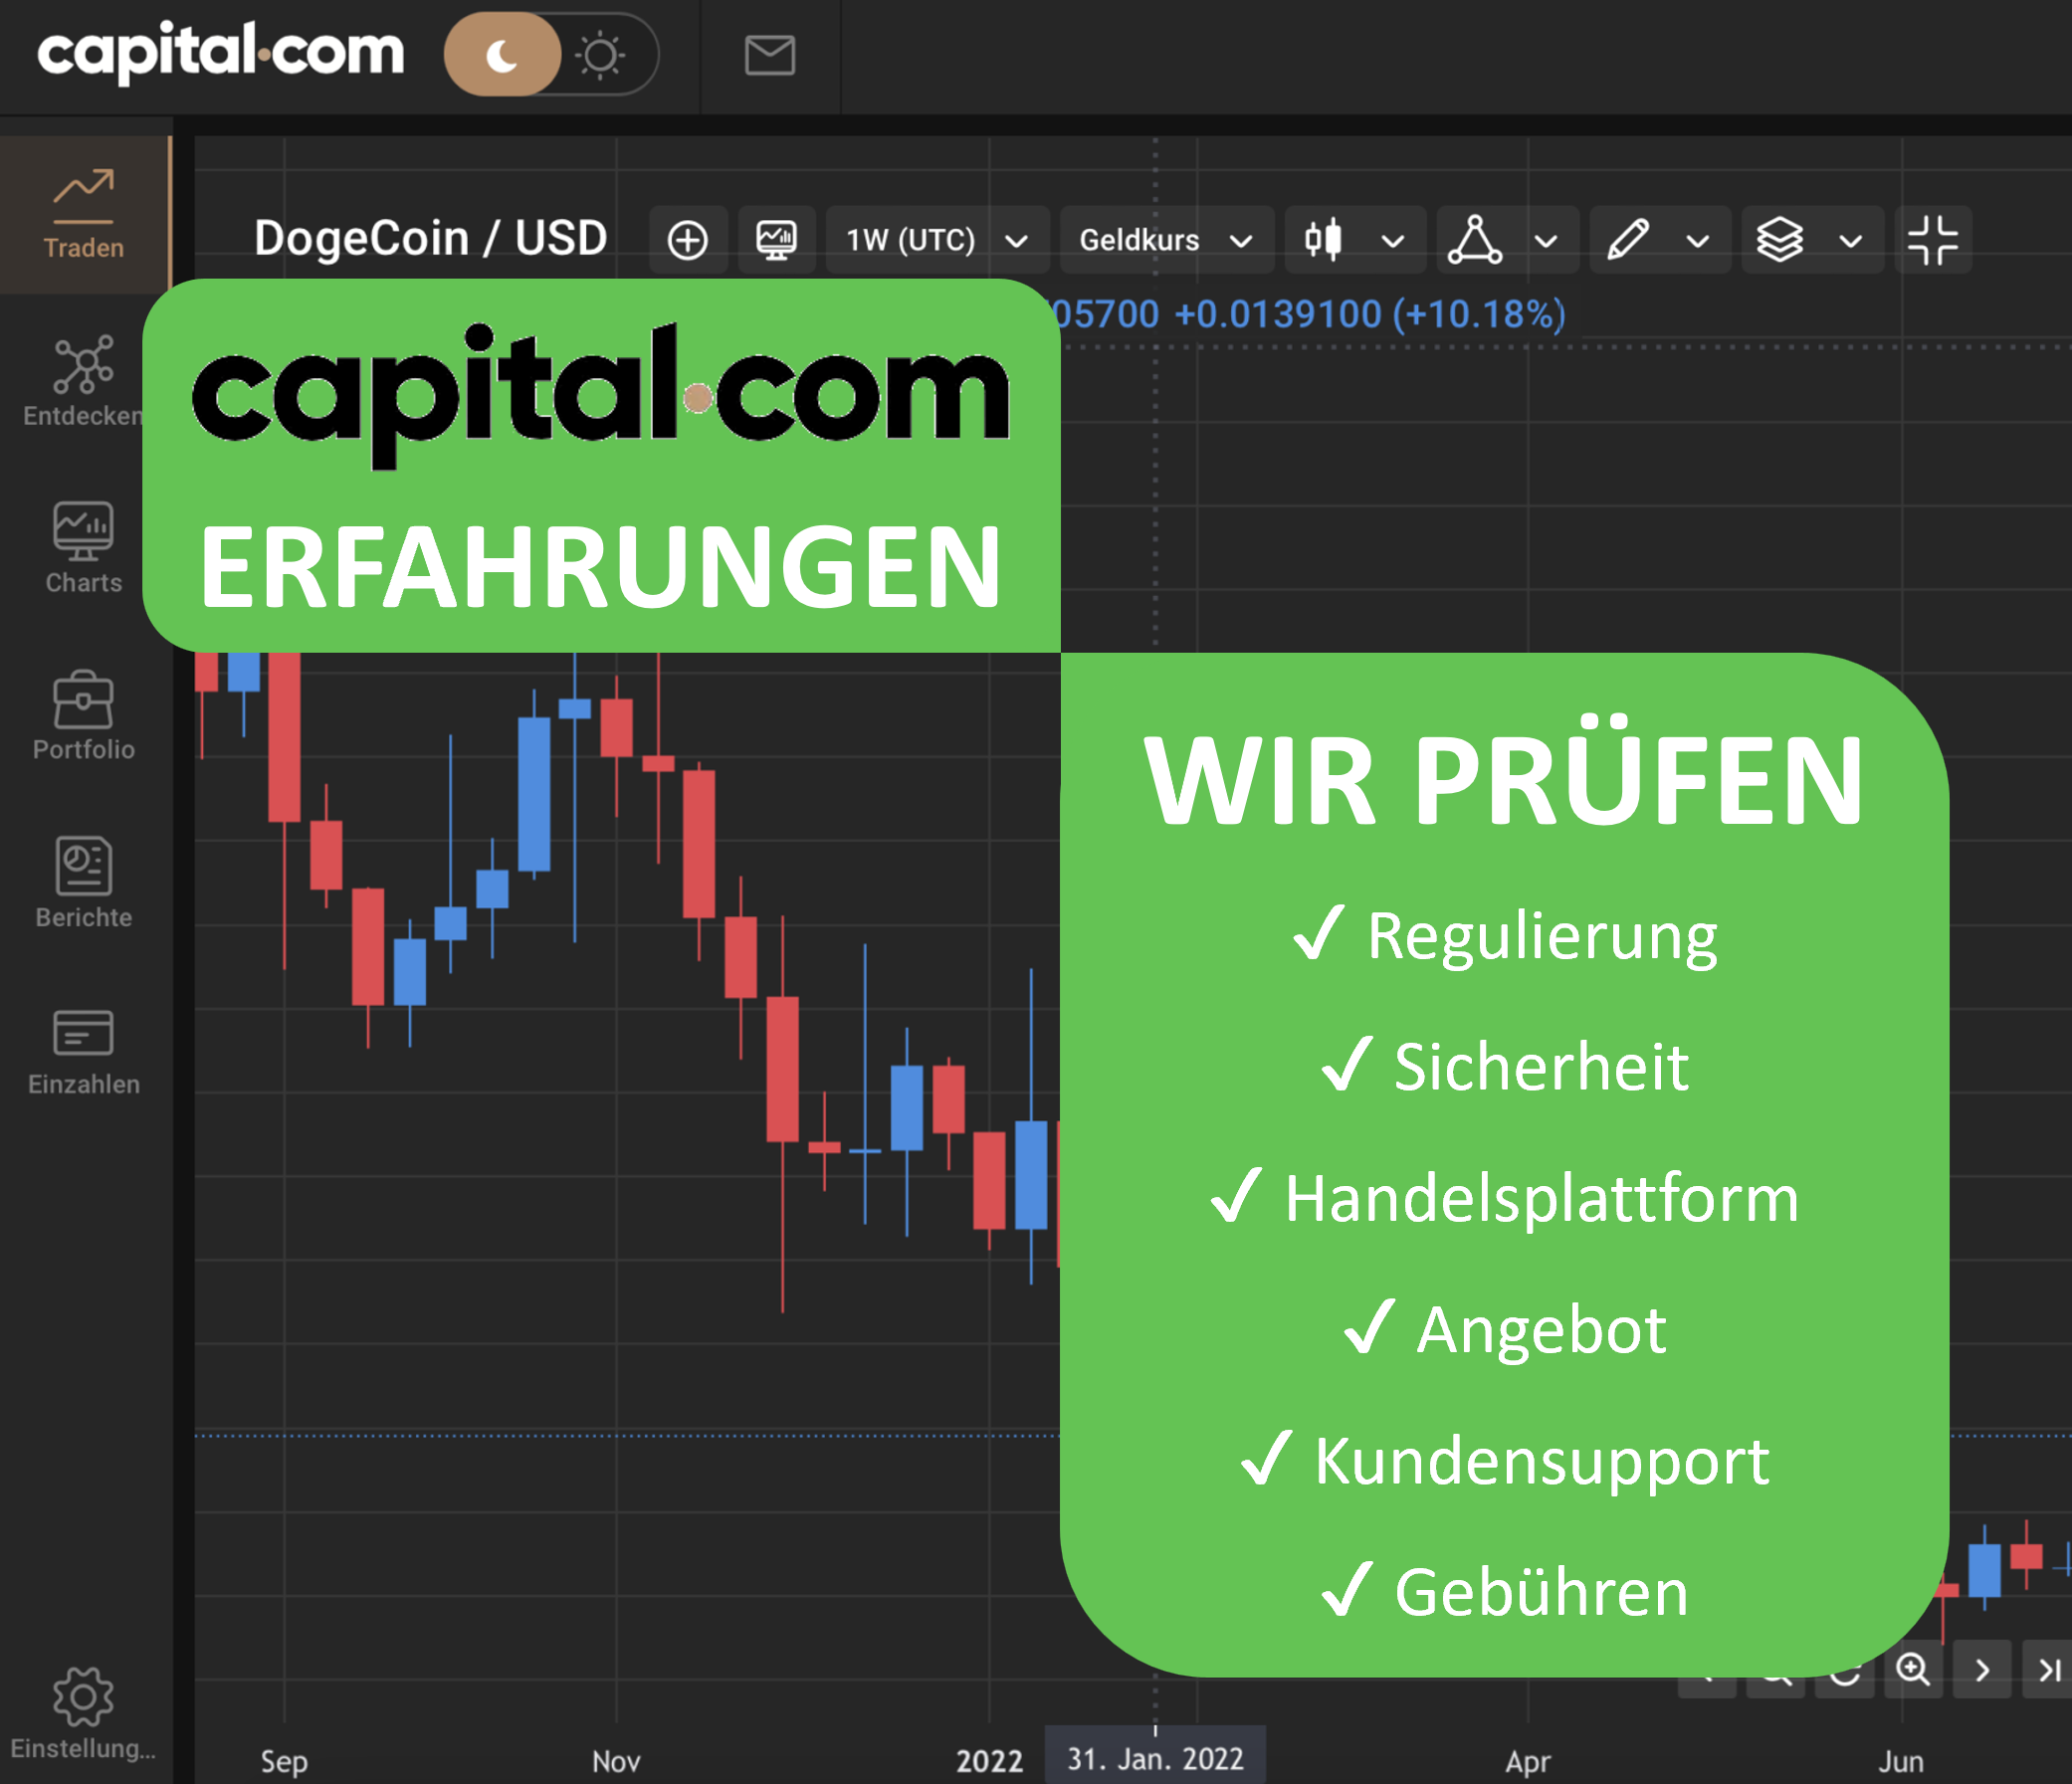 Capital.com Erfahrungen und Ueberpruefung